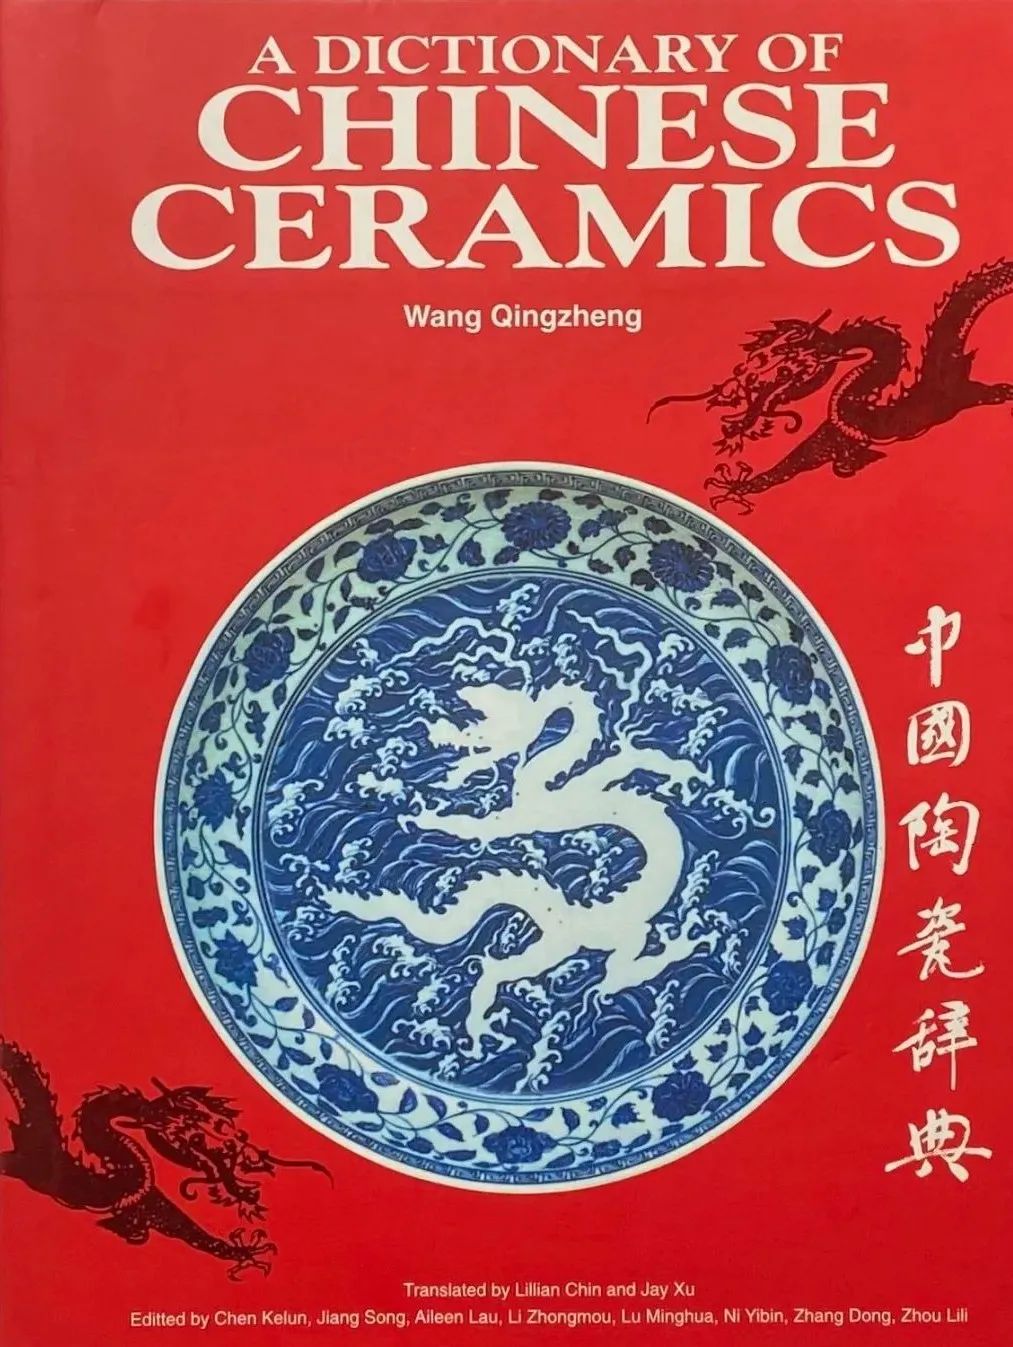 图 | 汪庆正主编、许杰翻译的《中国陶瓷辞典》英文版